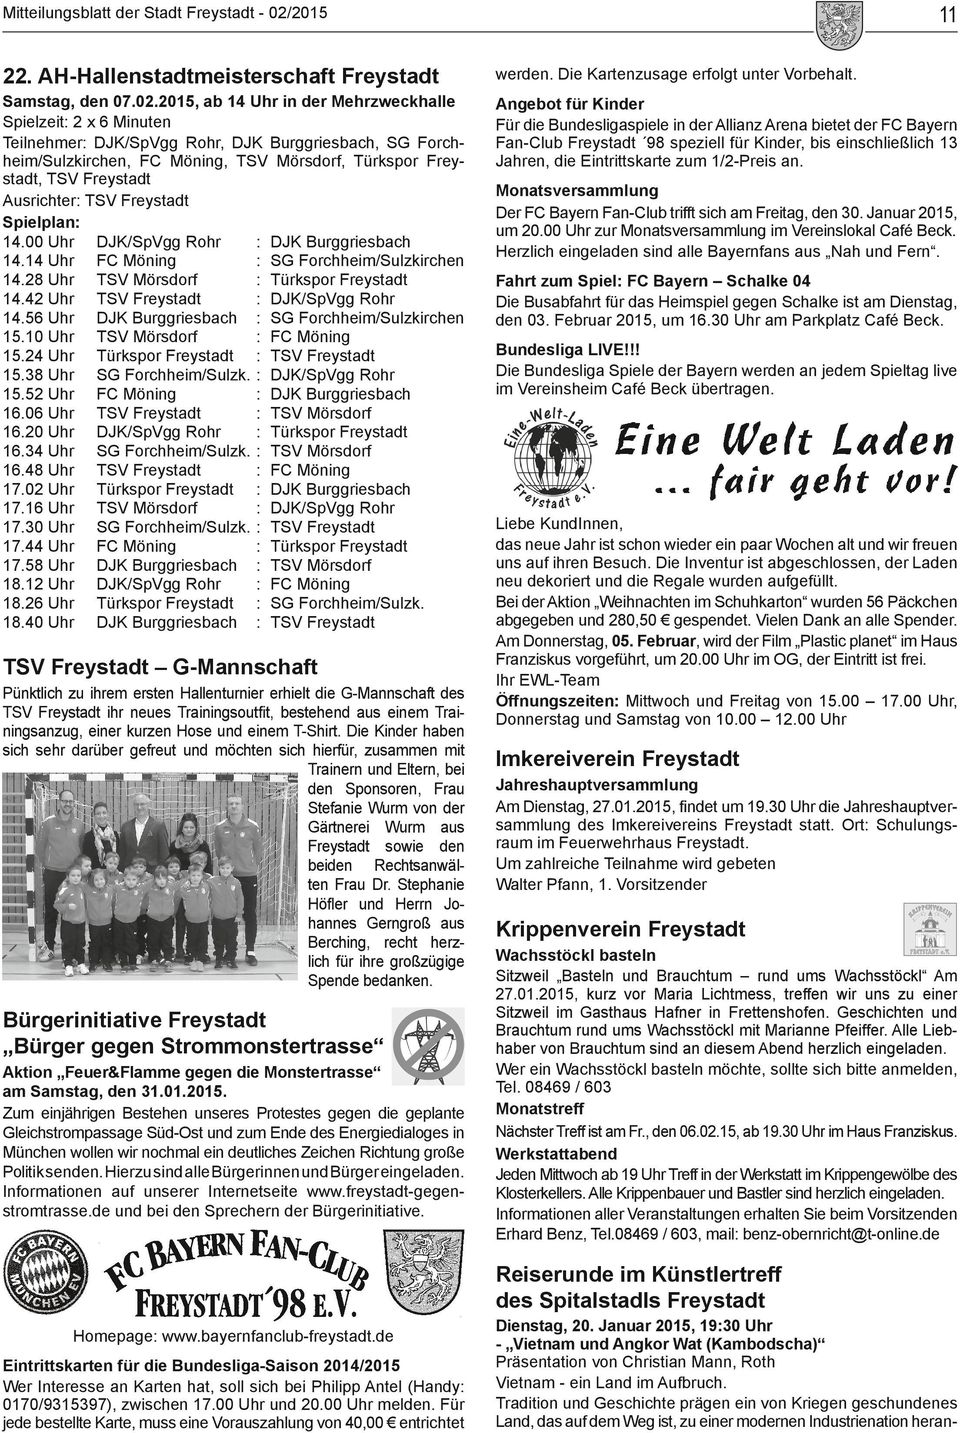 Ausrichter: TSV Freystadt Spielplan: 14.00 Uhr DJK/SpVgg Rohr : DJK Burggriesbach 14.14 Uhr FC Möning : SG Forchheim/Sulzkirchen 14.28 Uhr TSV Mörsdorf : Türkspor Freystadt 14.